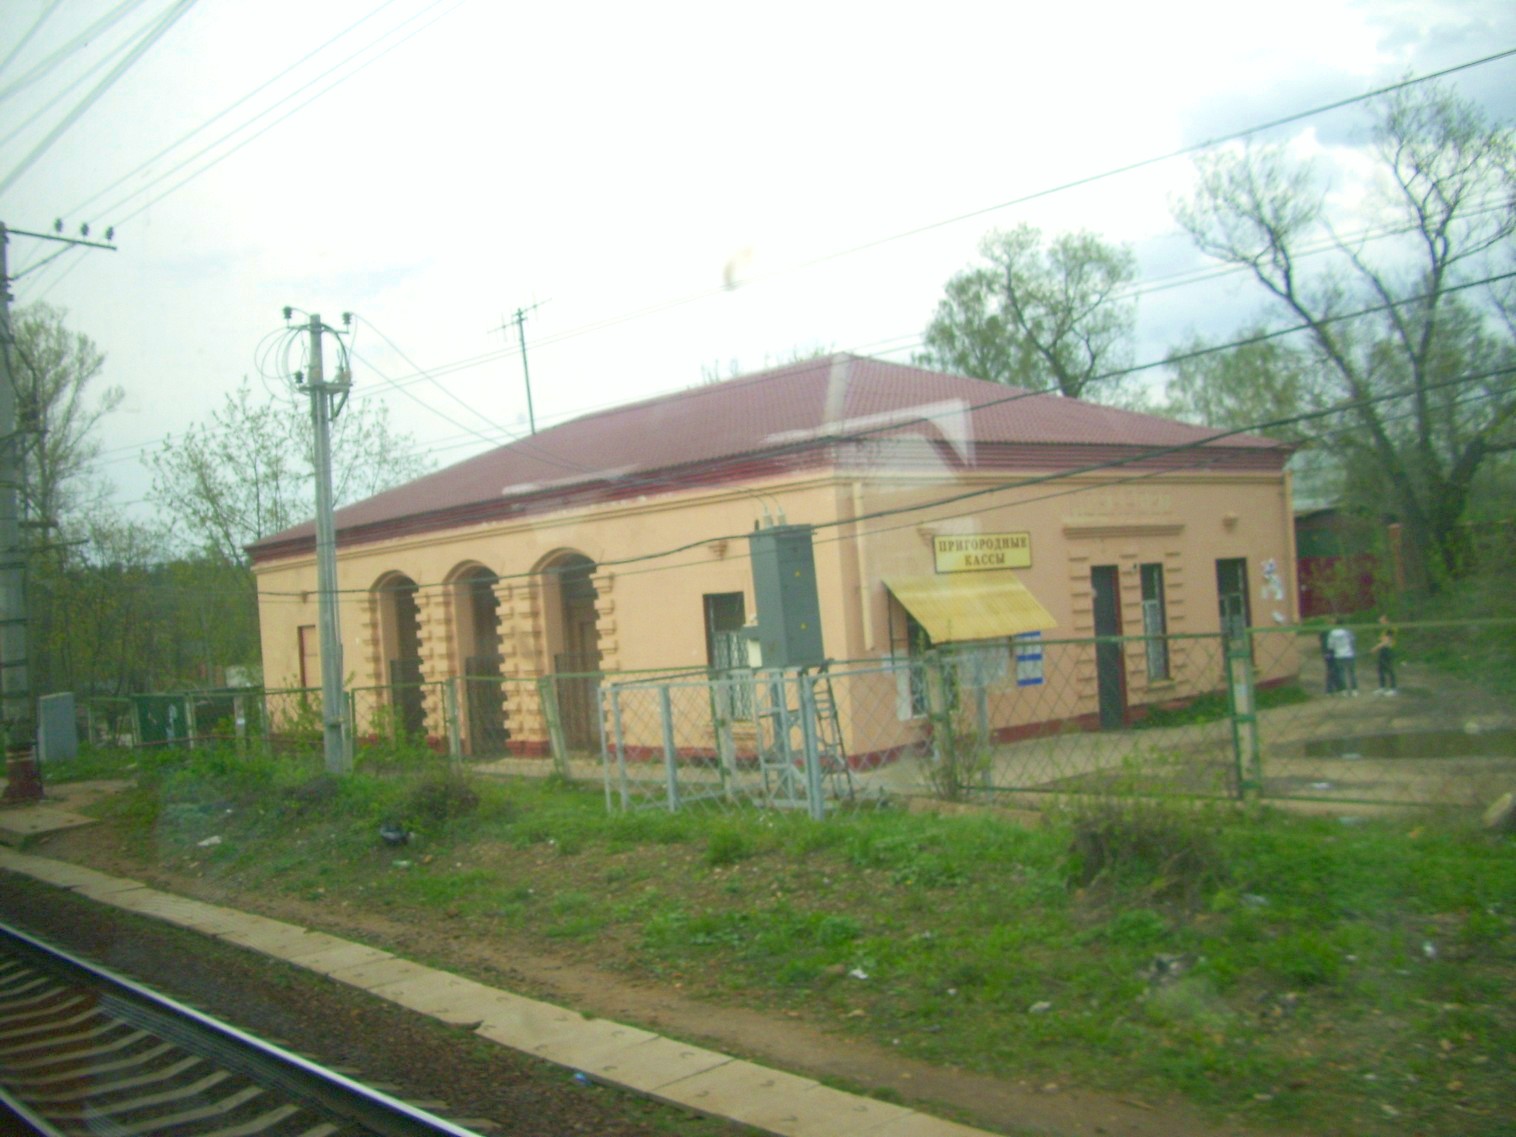 Петербурго-Московская железнодорожная линия на территории Московской области  — станция Поварово